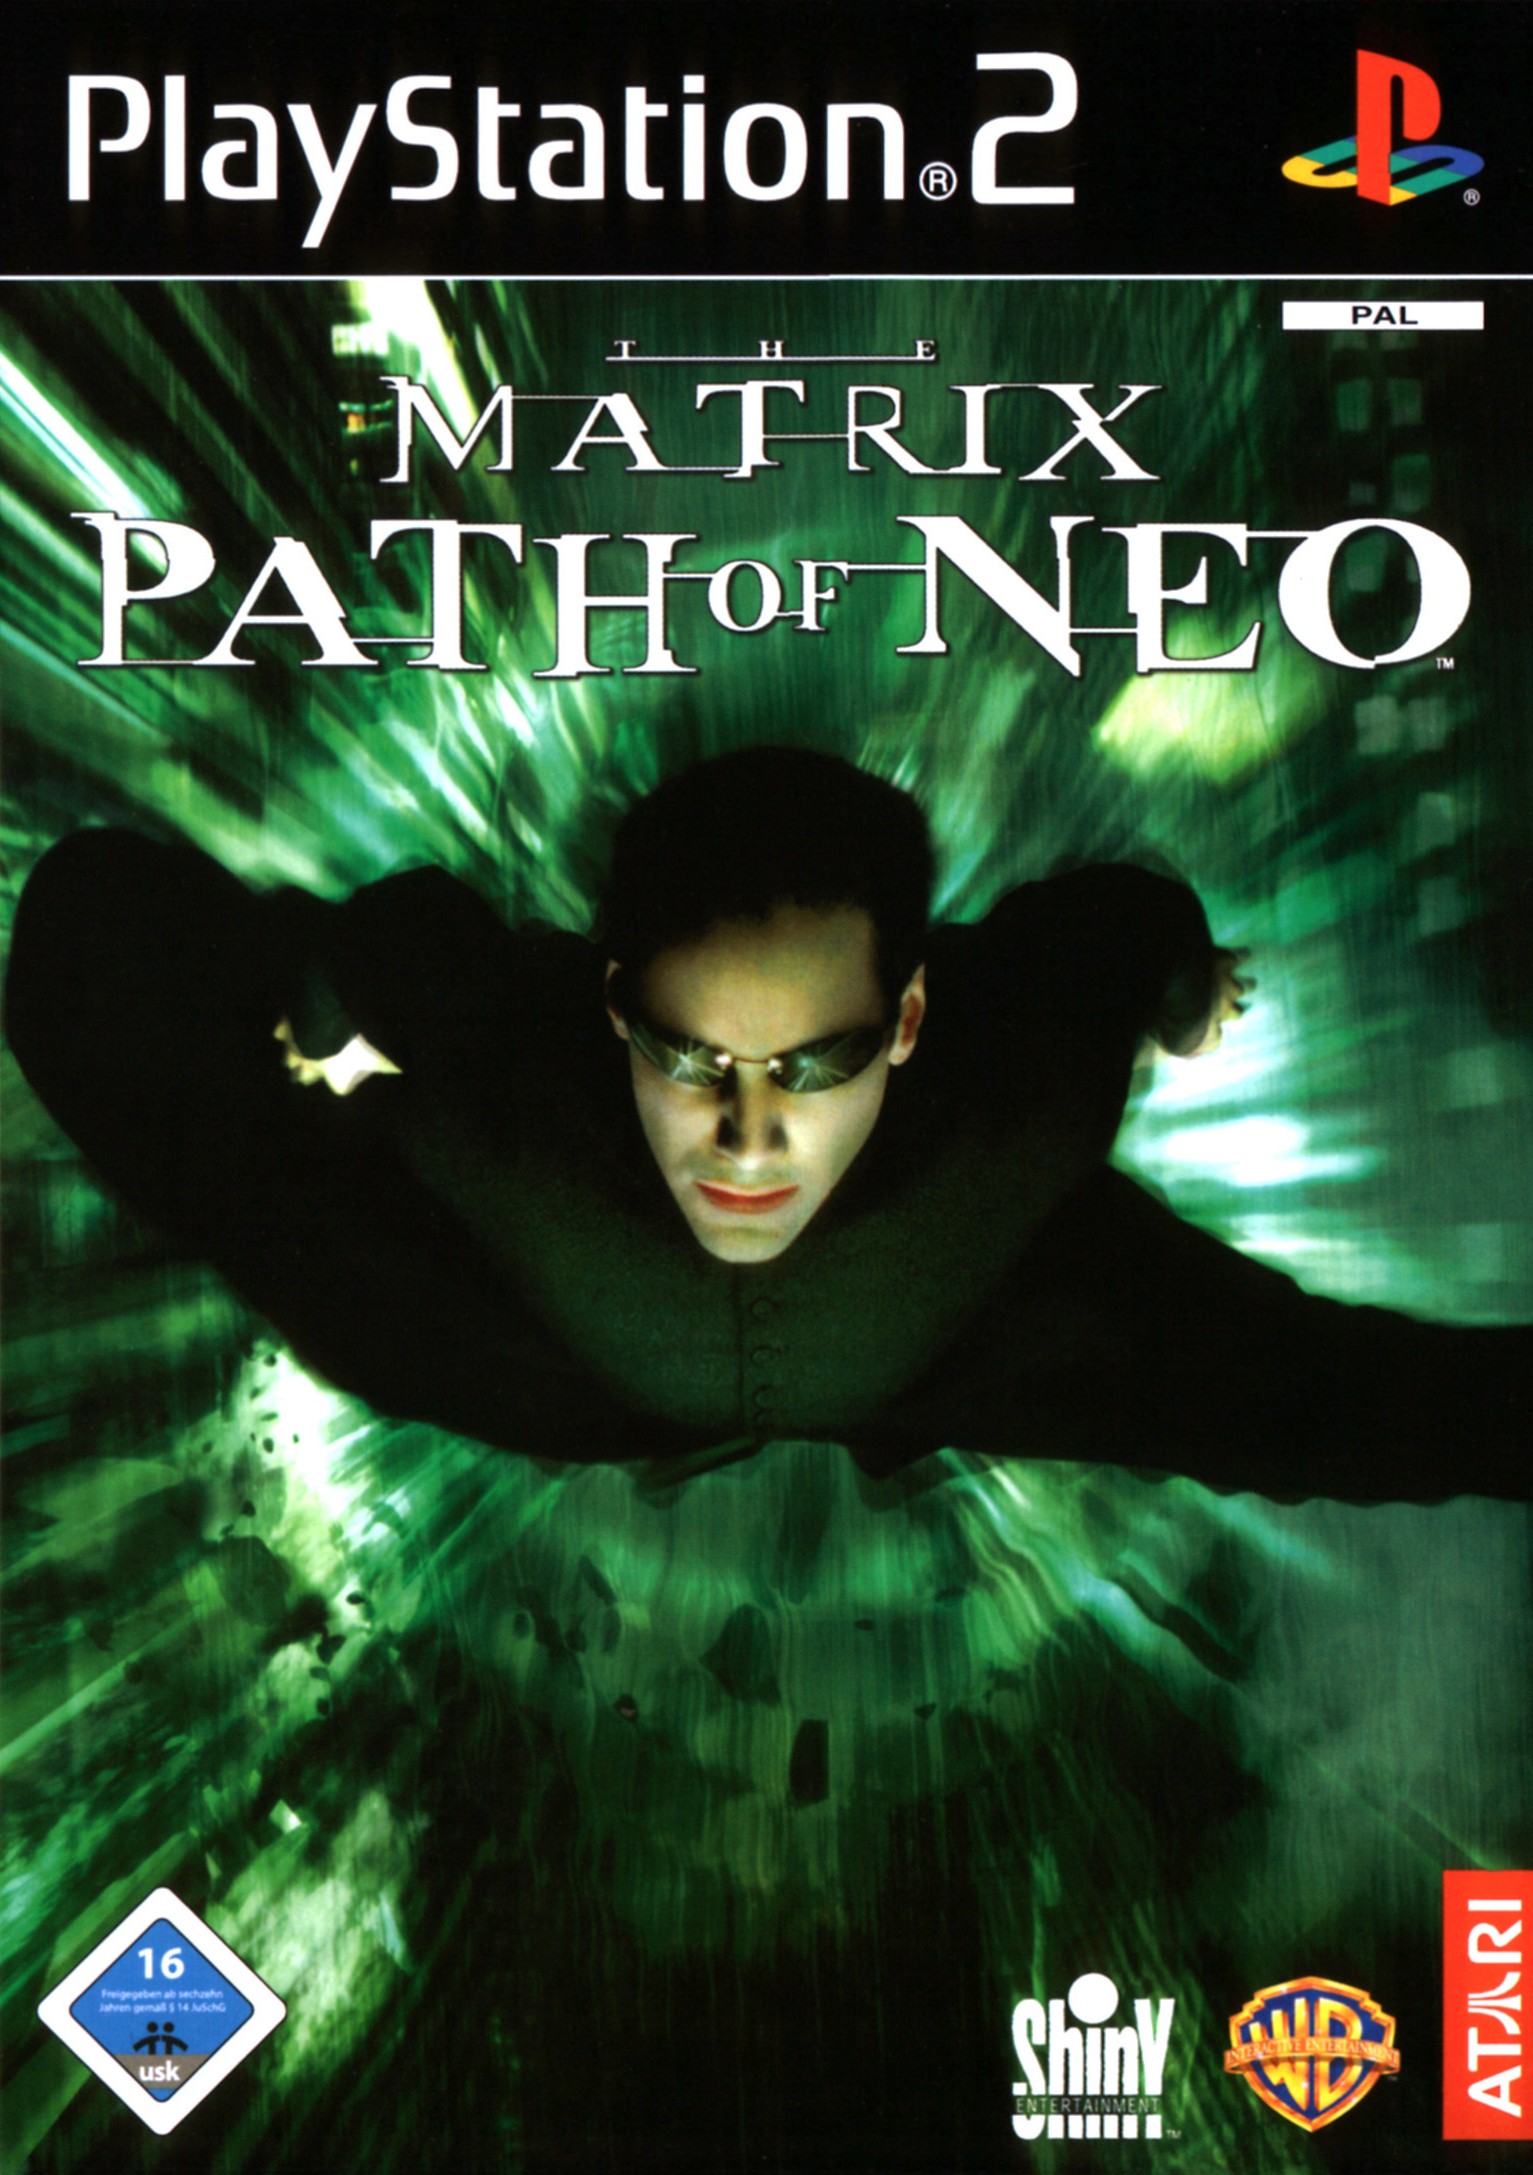 matrix path of neo pc box art